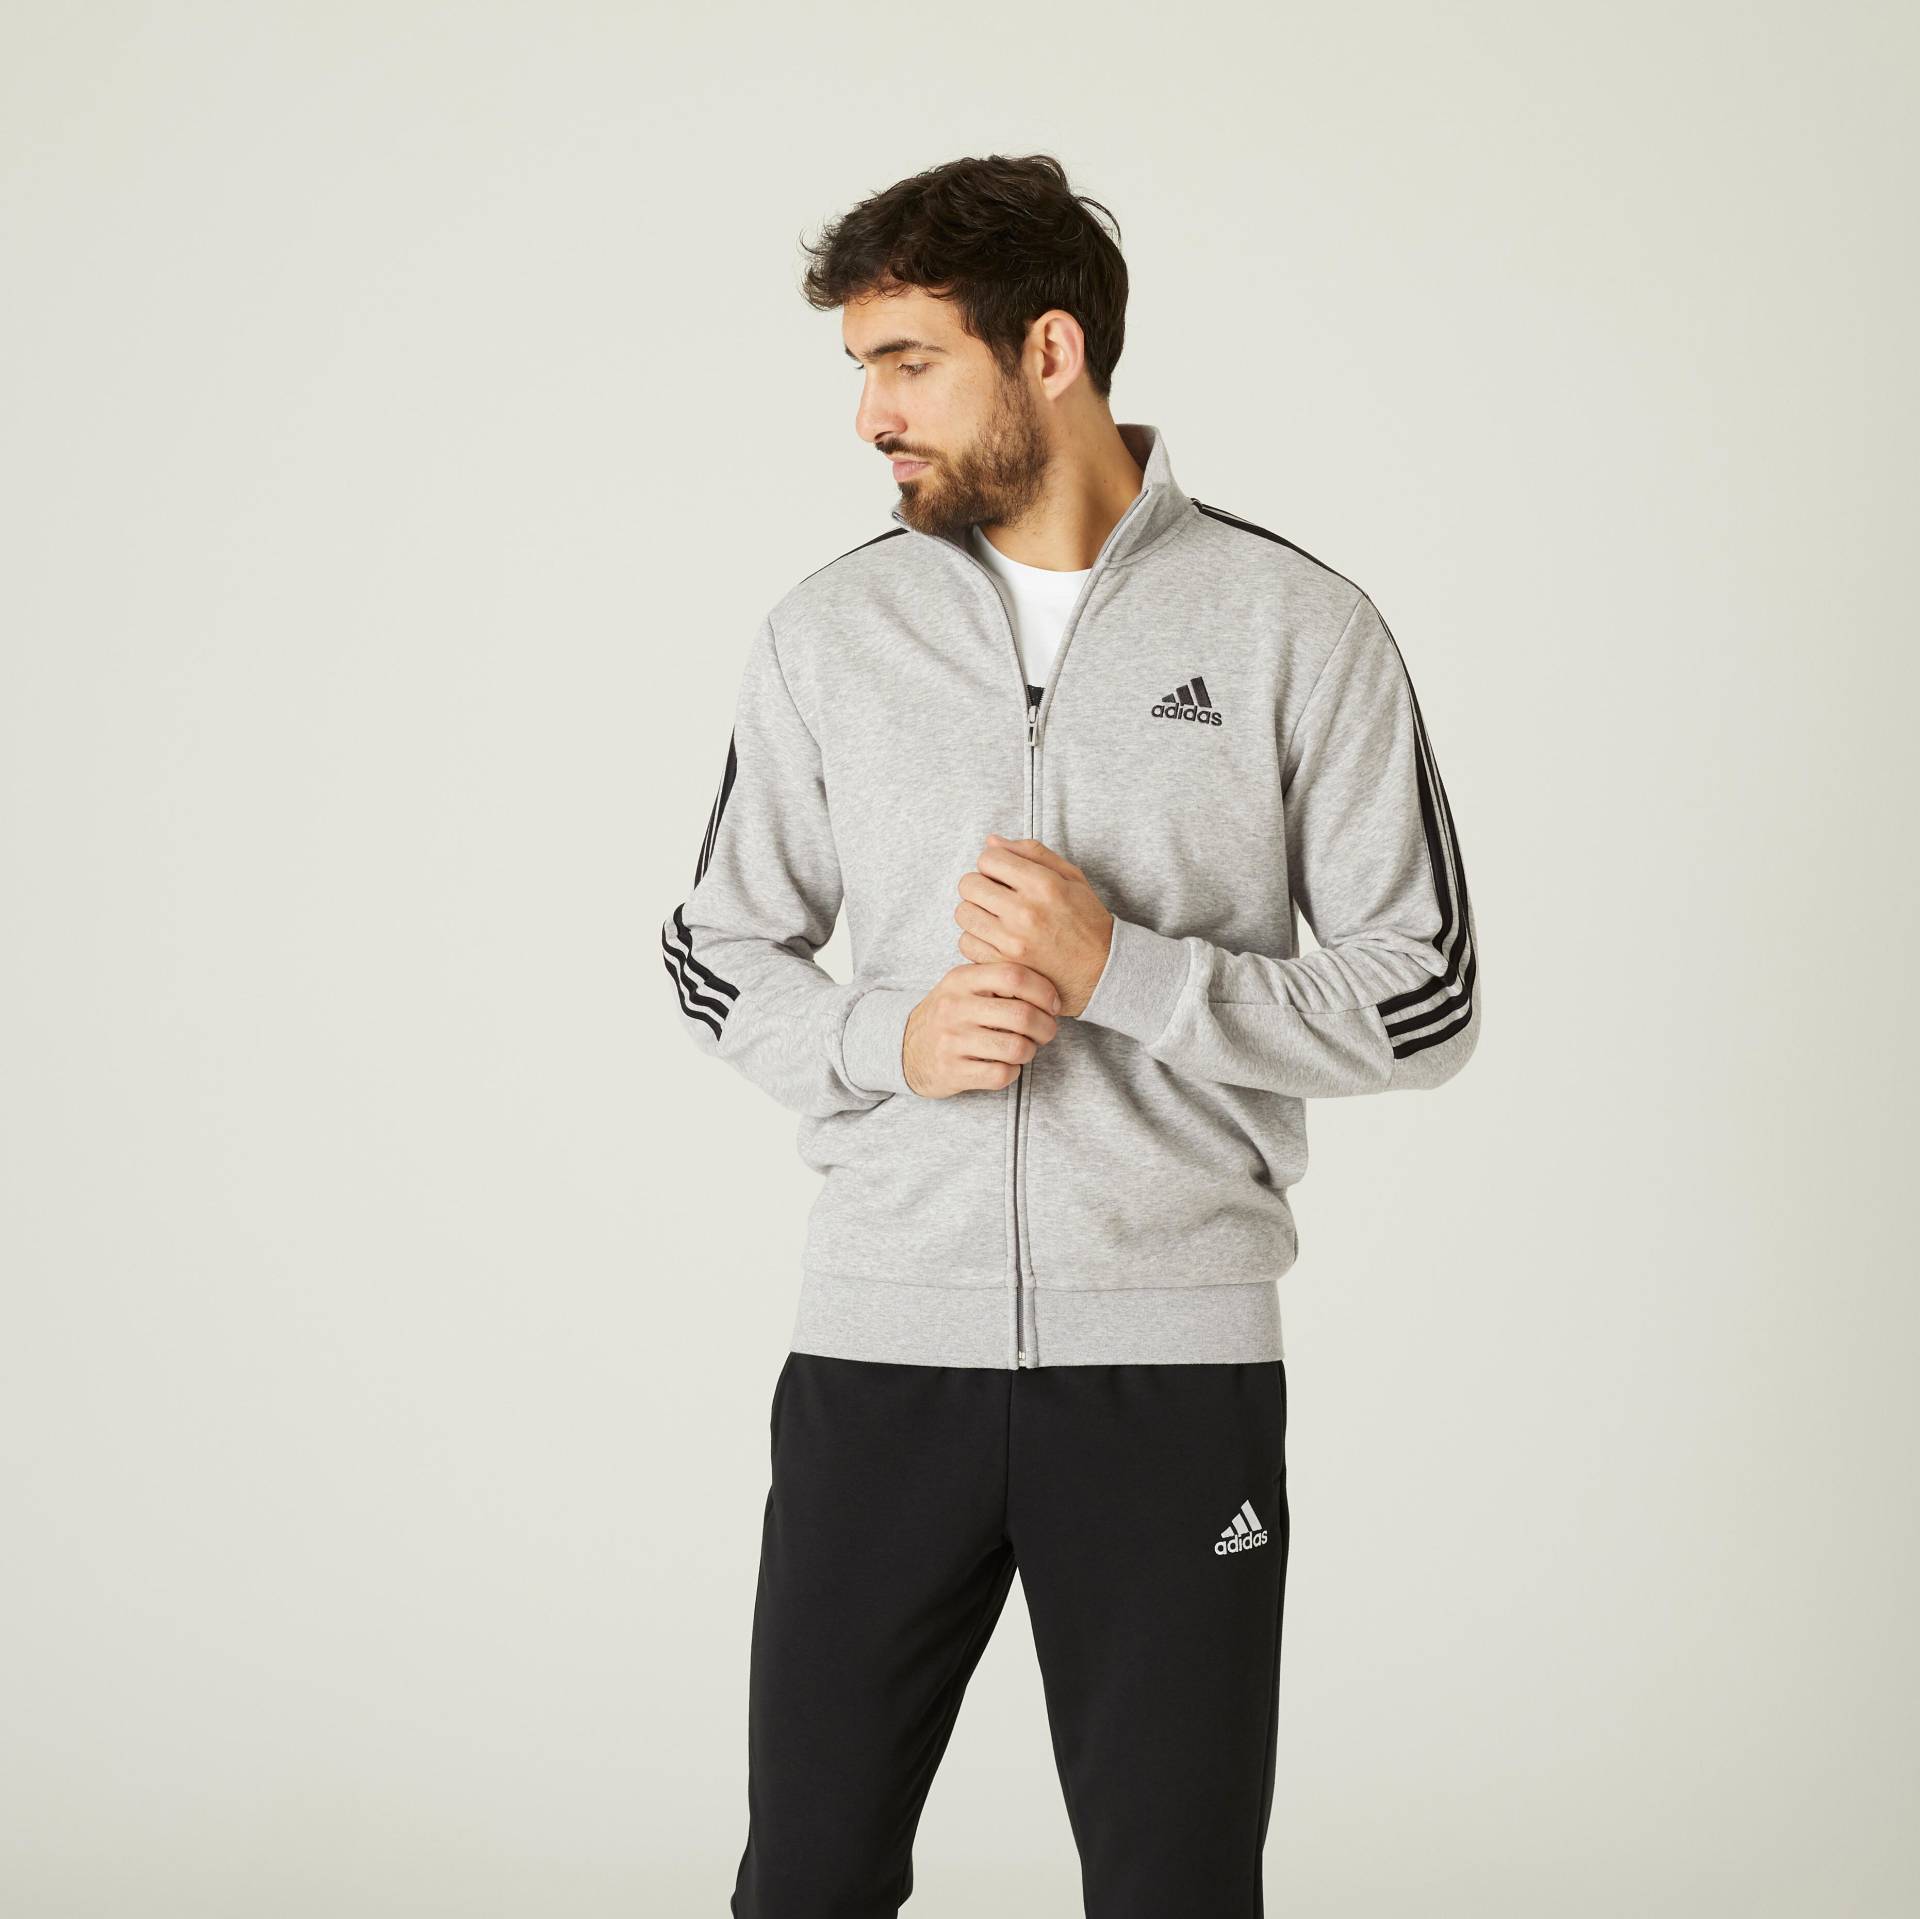 Adidas Trainingsanzug Herren Baumwolle - Aeroready graumeliert von Adidas